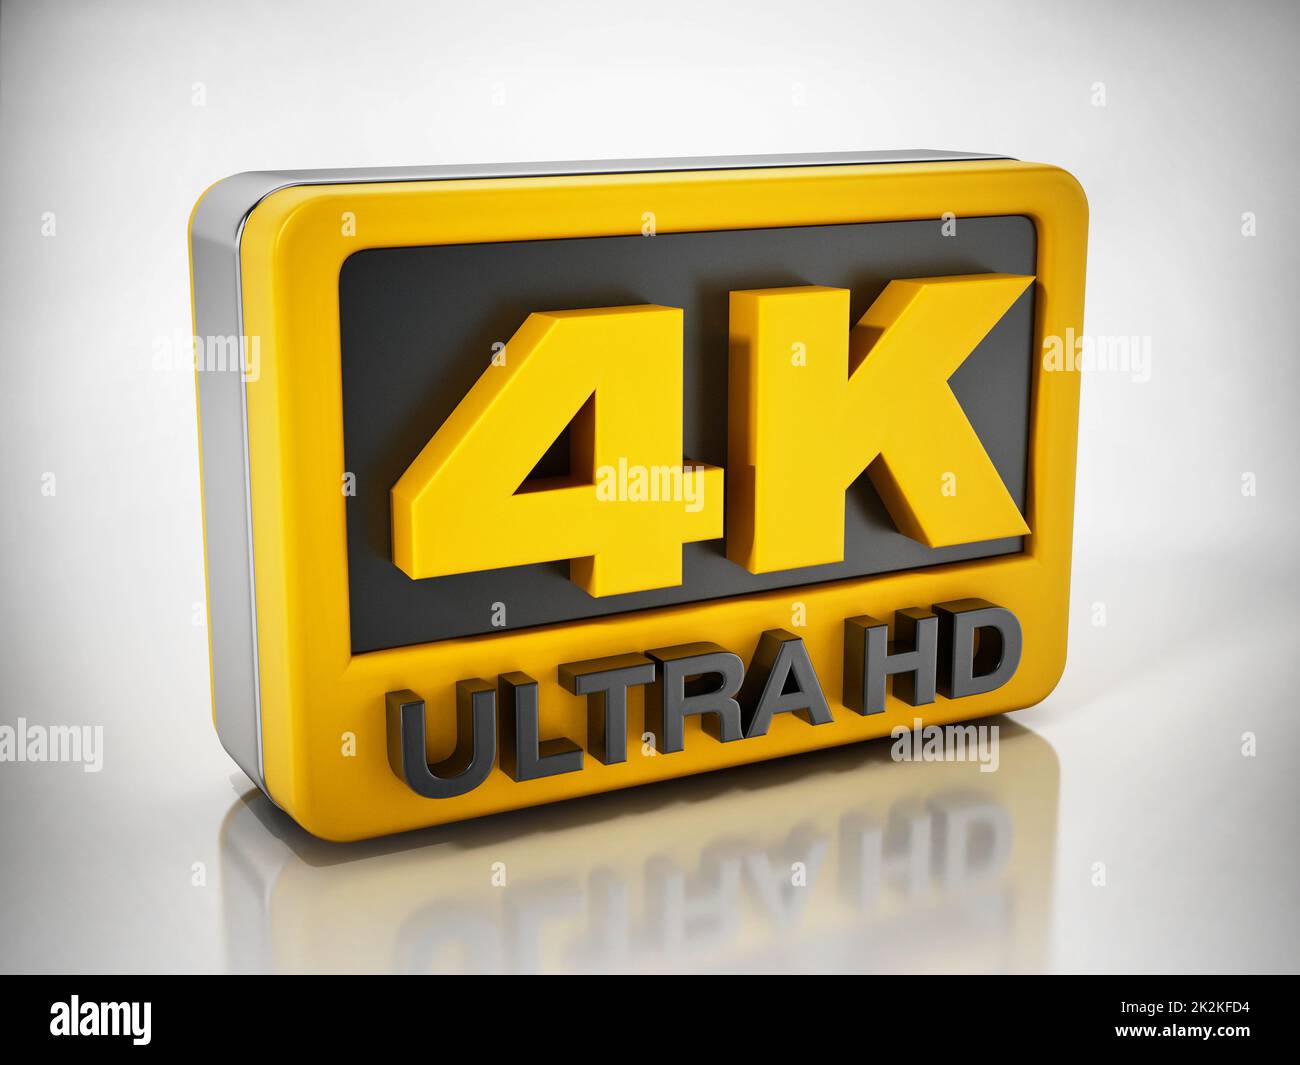 Icona 4K Ultra HD isolata su sfondo bianco. Illustrazione 3D Foto Stock